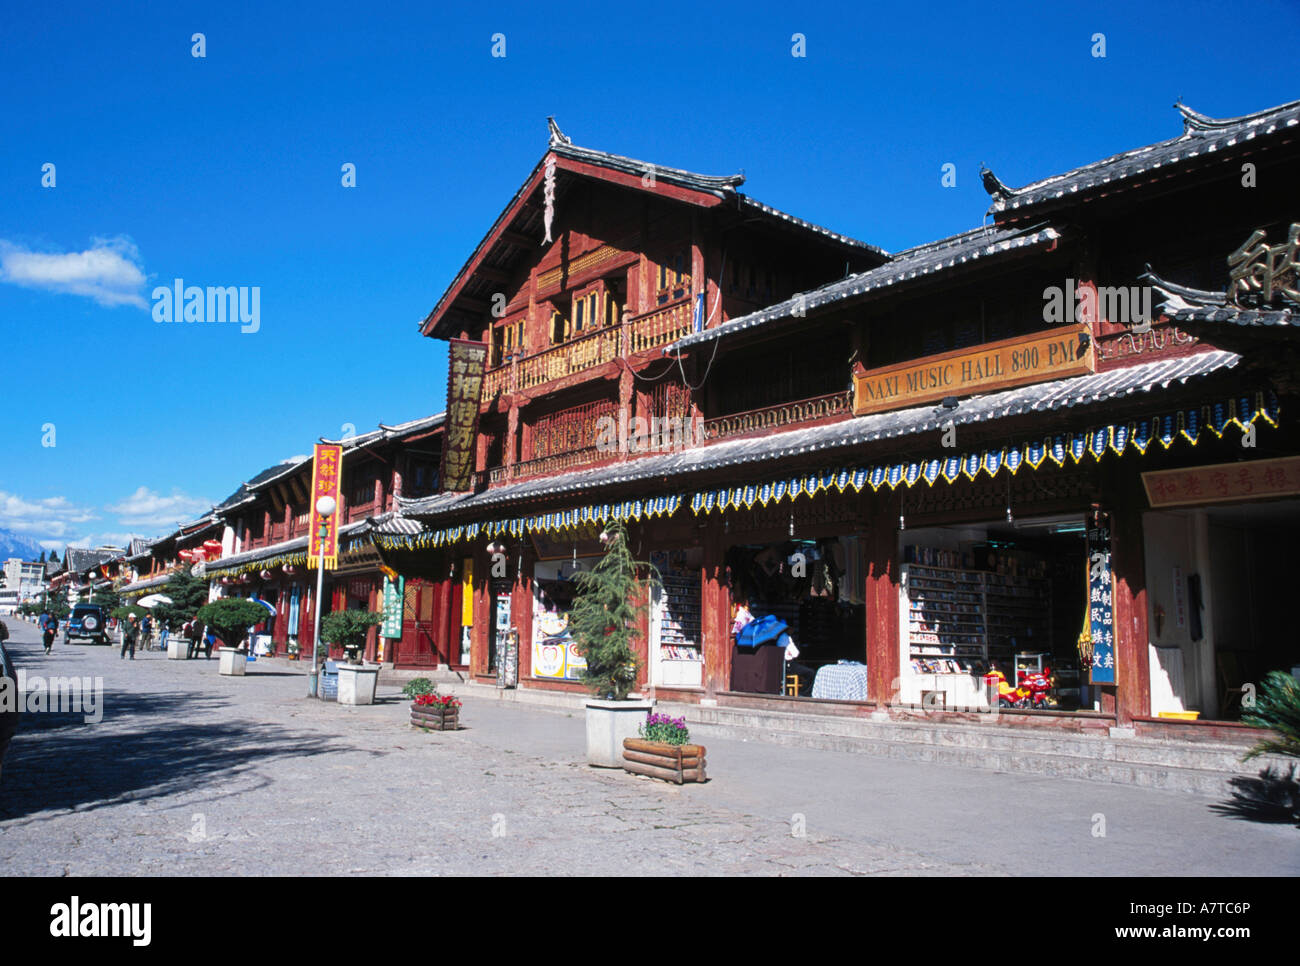 Stores at market in town, Lijiang, Yunnan Province, China Stock Photo